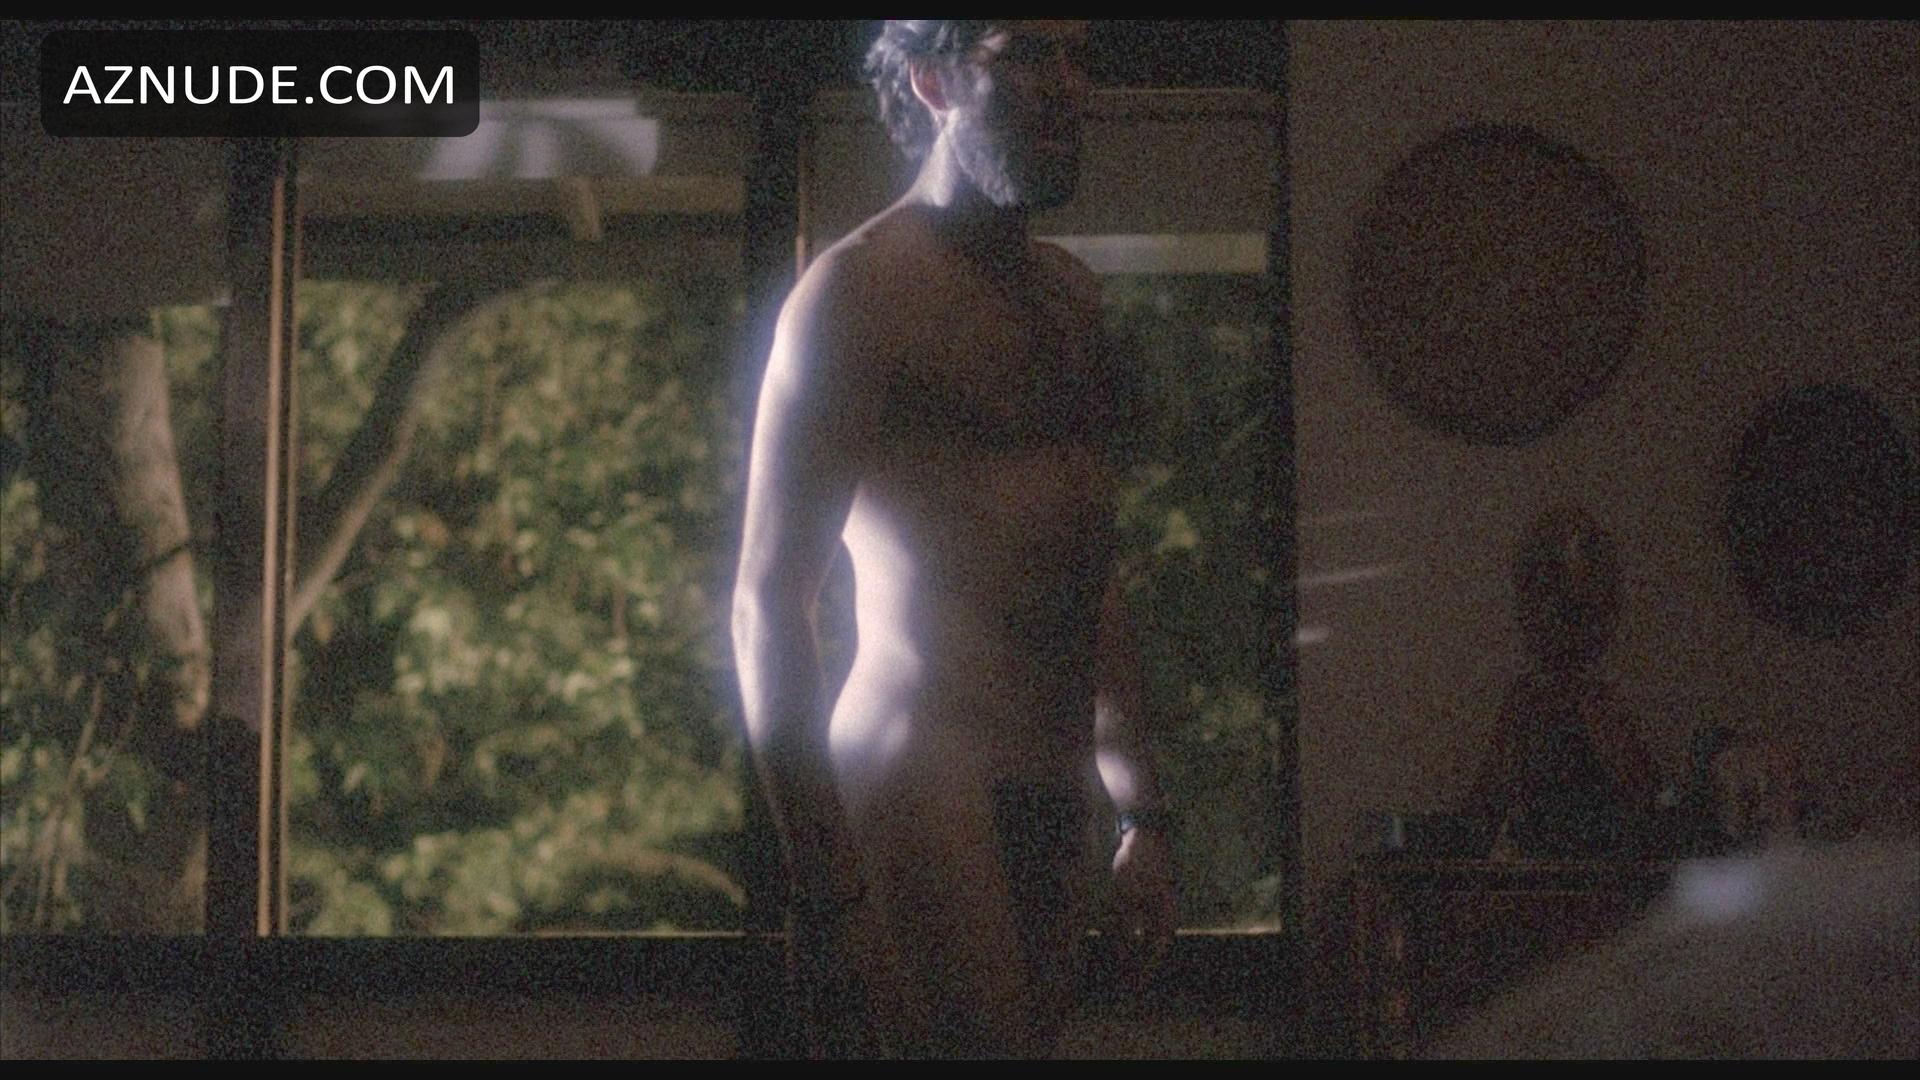 Pierce Brosnan Nude Aznude Men The Best Porn Website